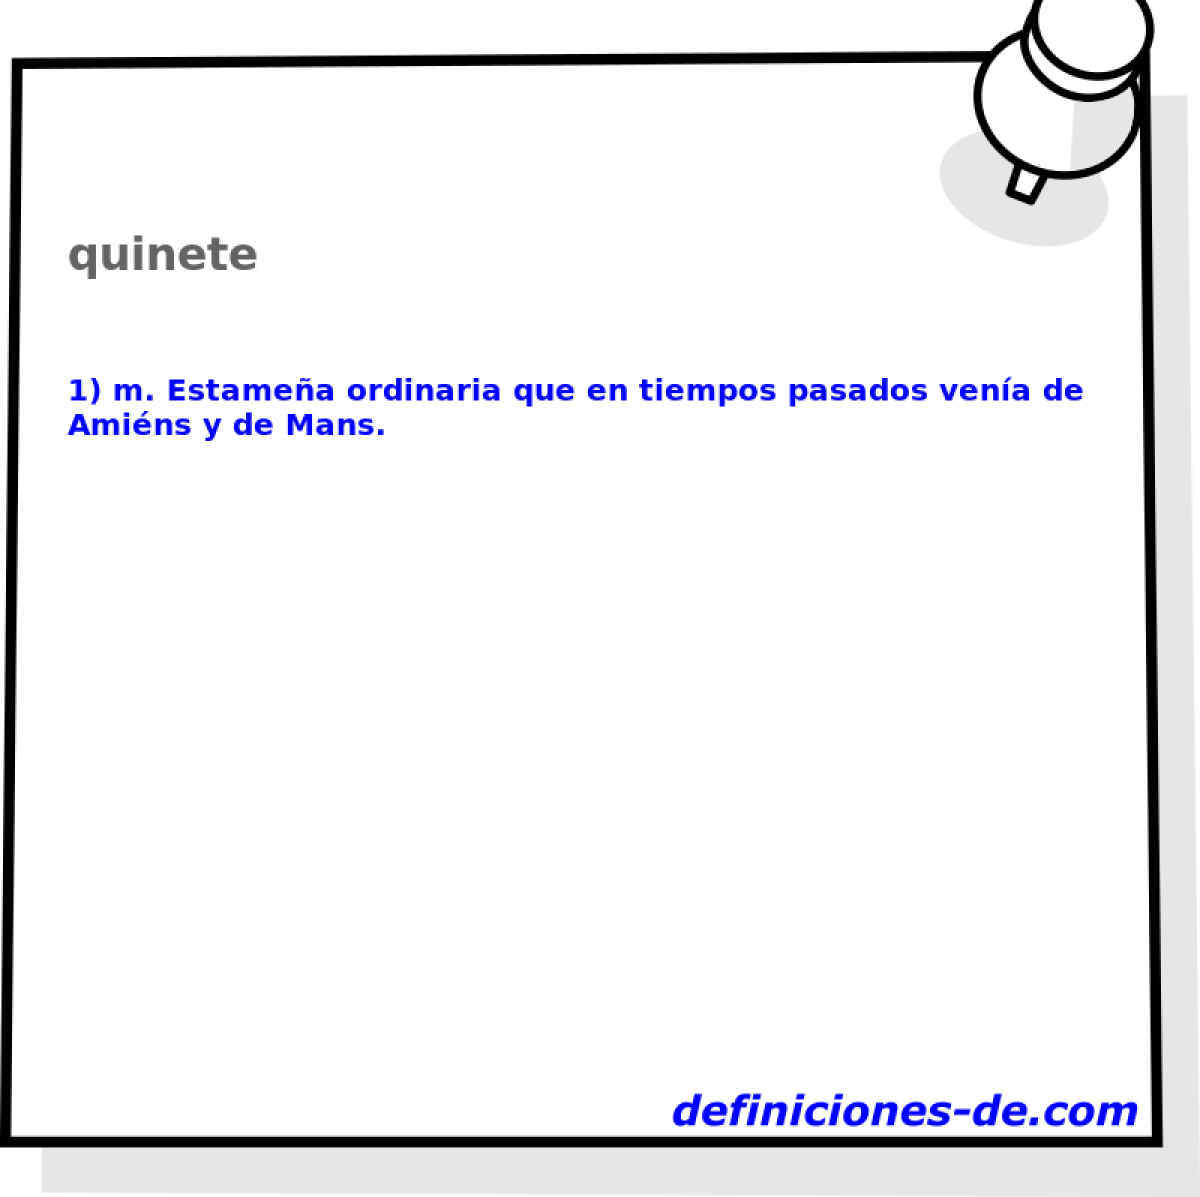 quinete 